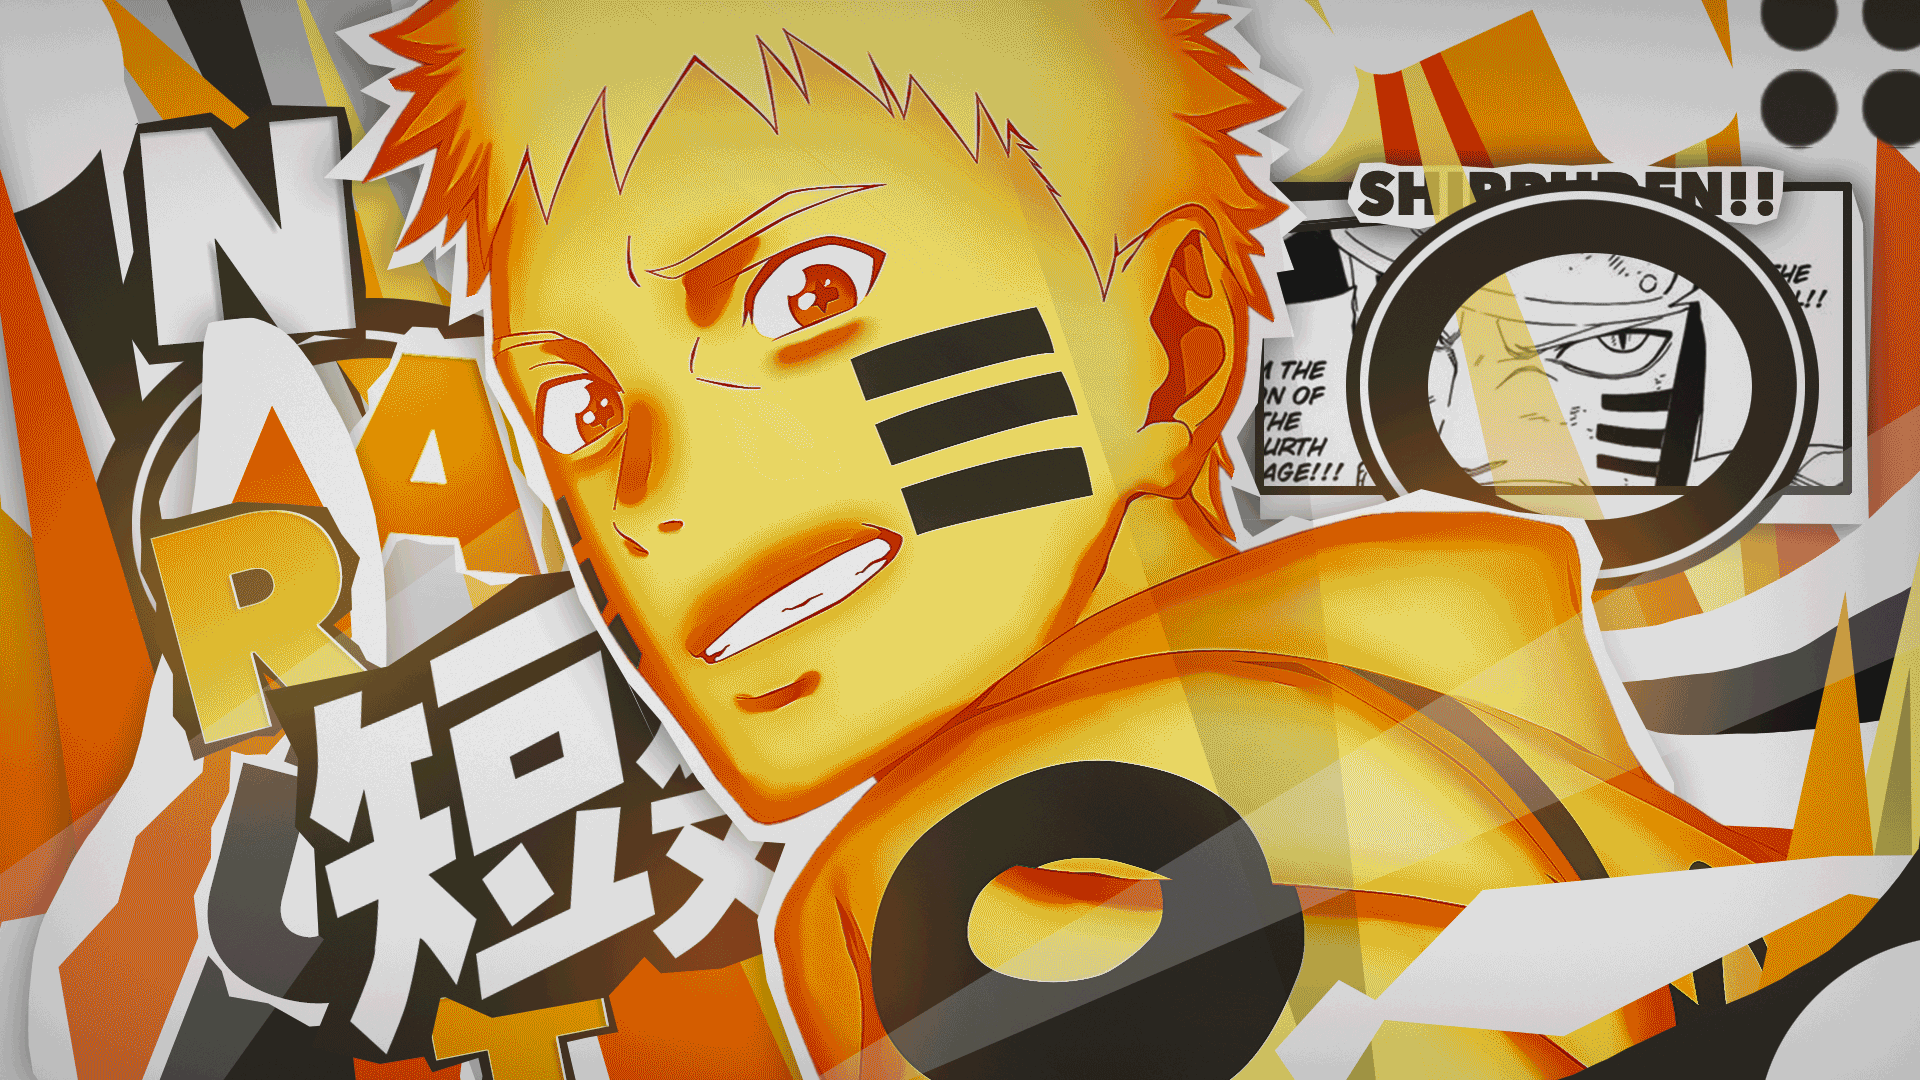 Naruto: Bạn yêu thích Sasuke, Sakura hay Naruto? Khối hành động và phiêu lưu của nhóm trẻ Ninja sẽ mang lại cho bạn những trải nghiệm tuyệt vời. Tìm hiểu về cuộc hành trình của Naruto để trở thành Hokage và những thử thách mà anh phải đối mặt!